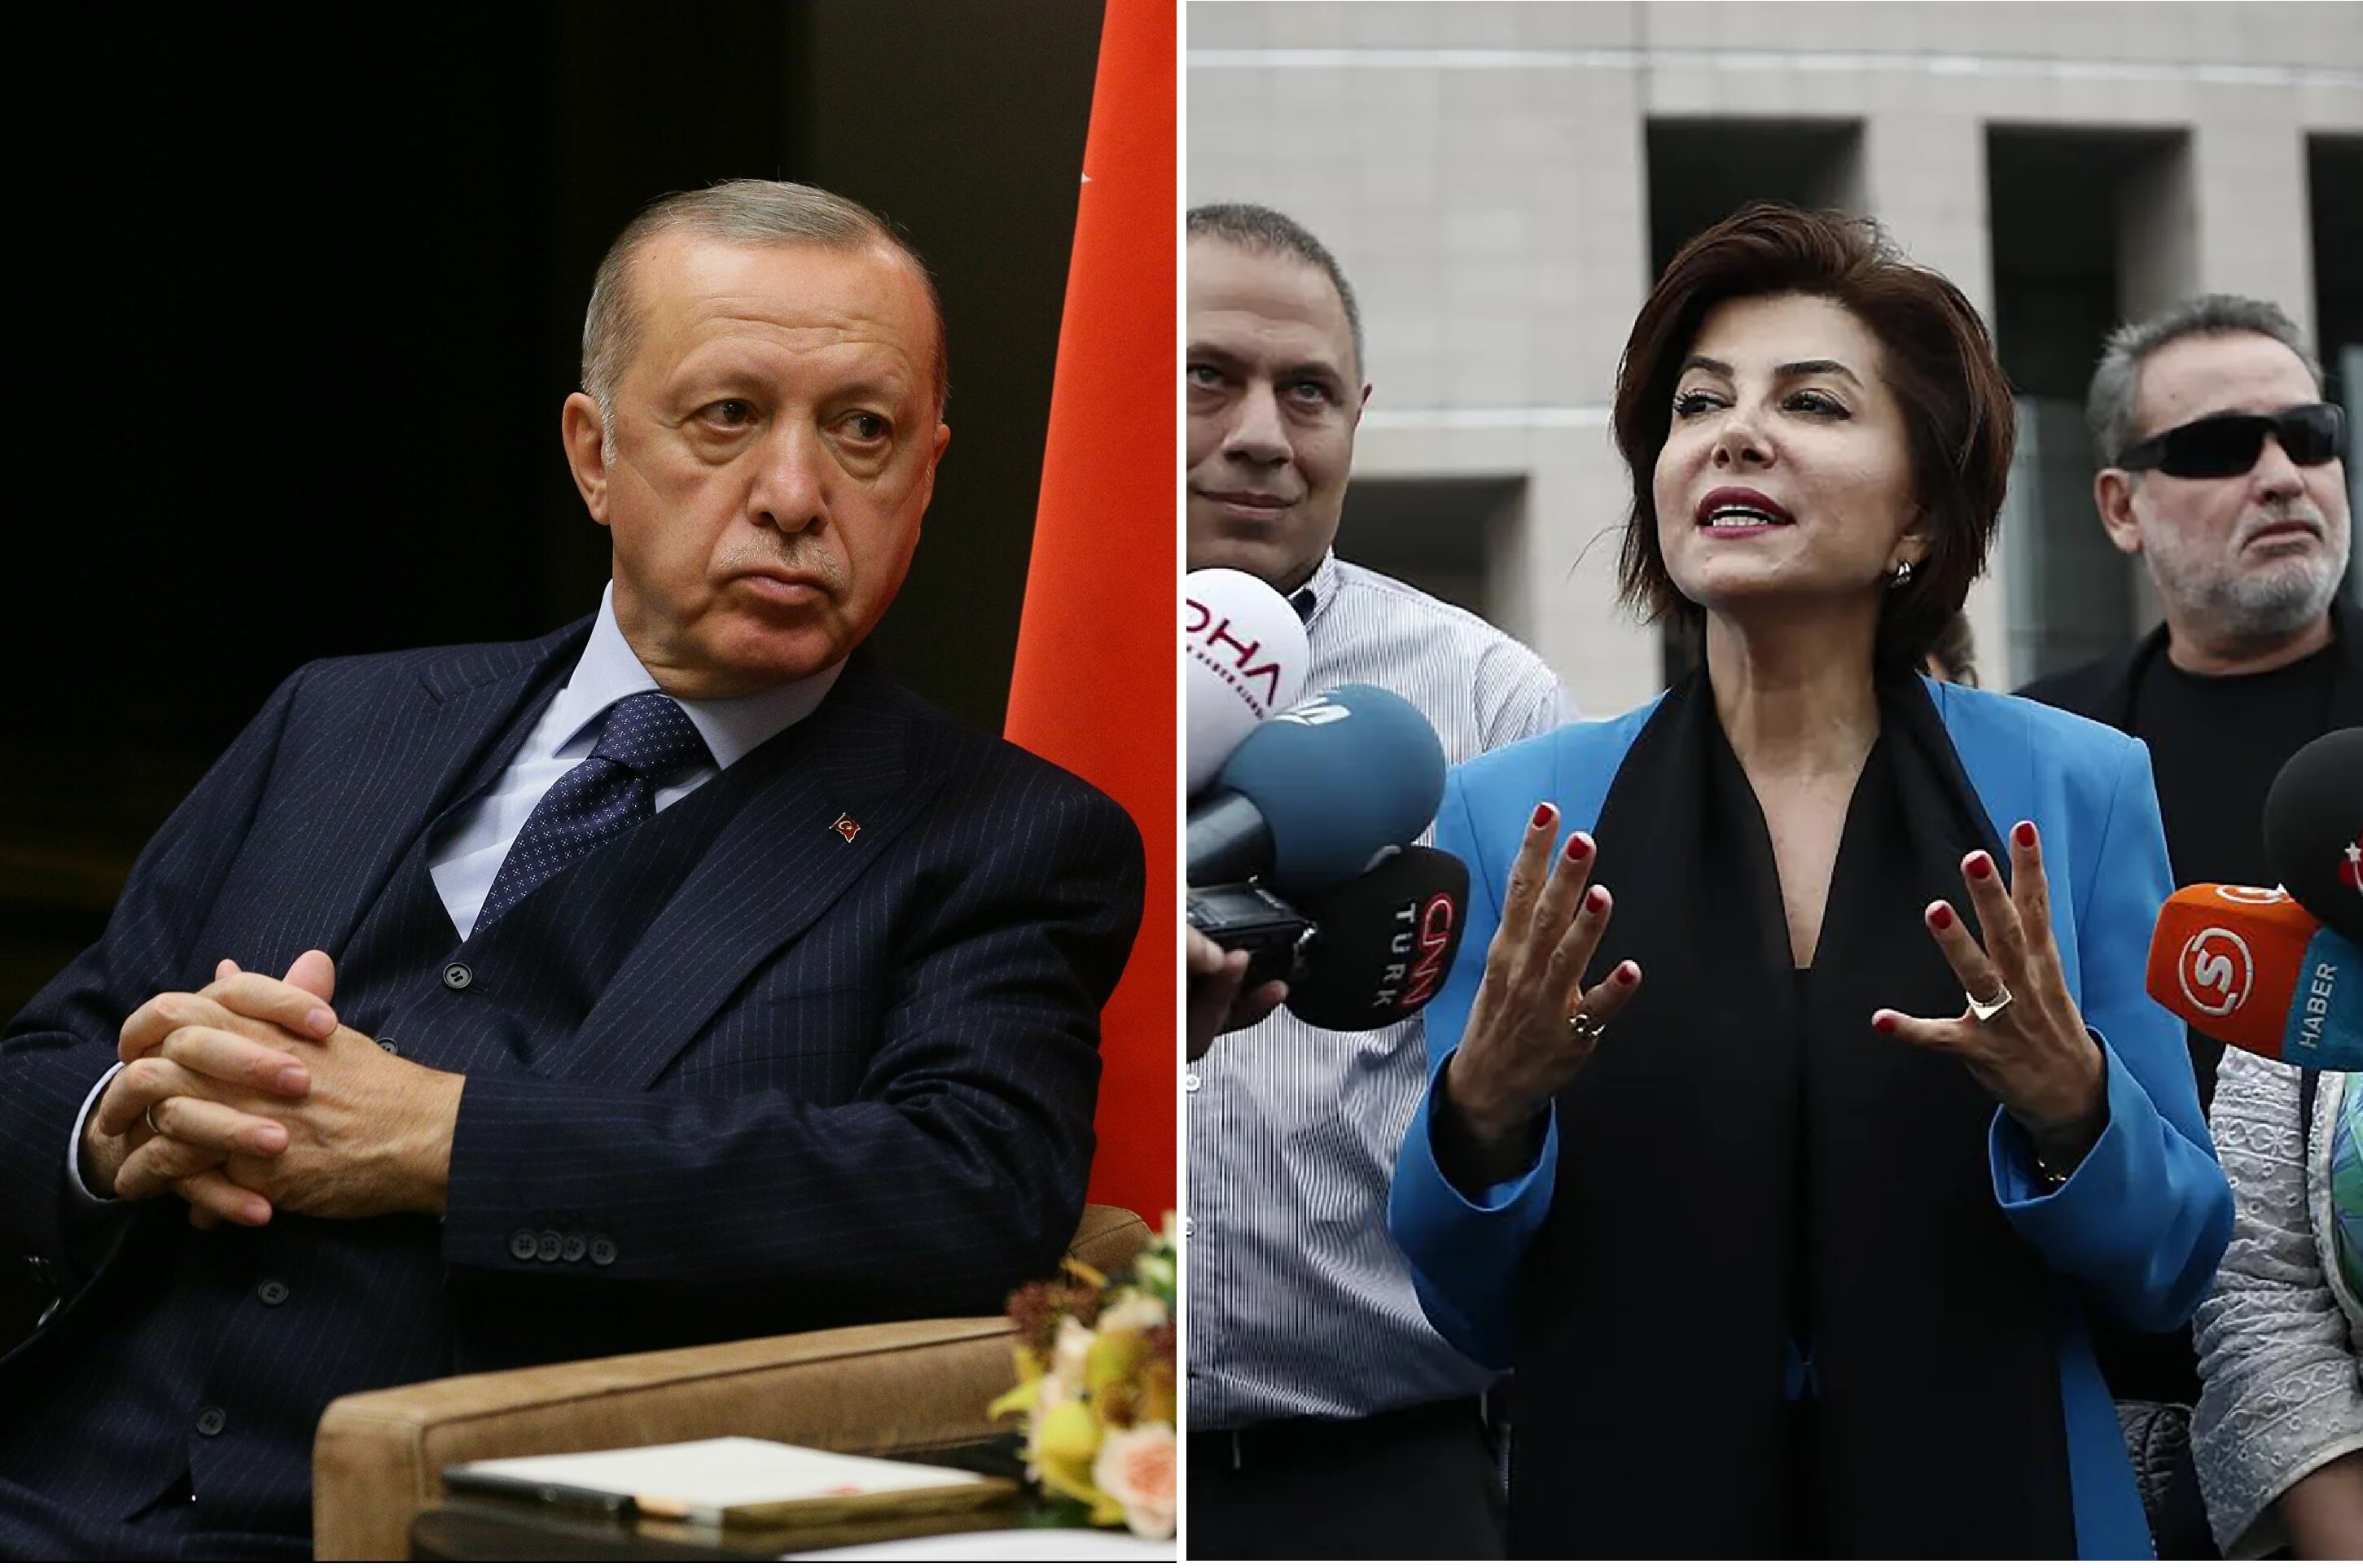 سجن صحفية تركية بتهمة "إهانة" أردوغان خلال مقابلة تليفزيونية.. فماذا قالت عنه؟